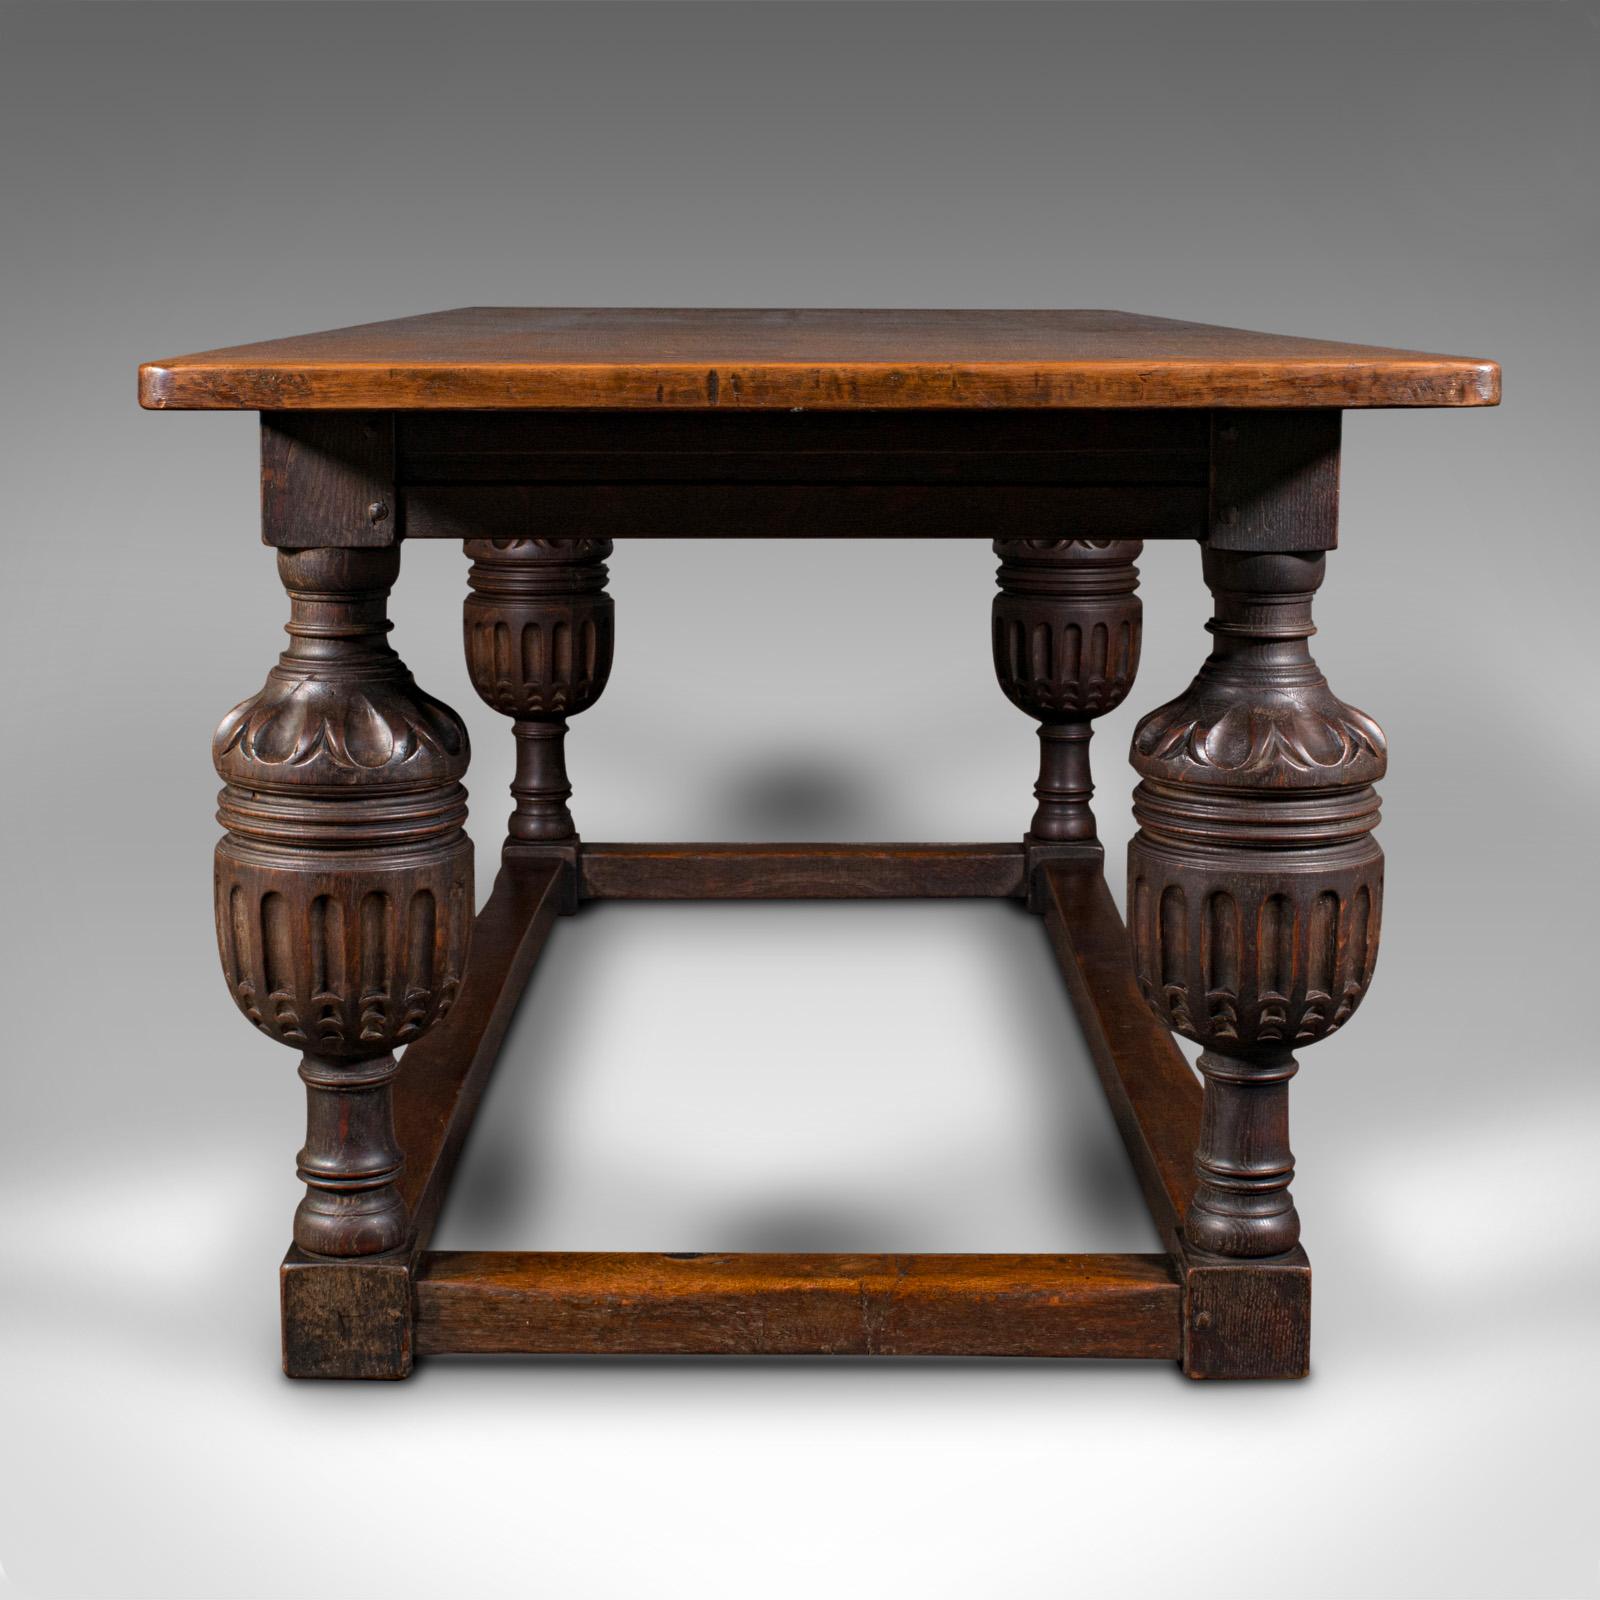 Victorien tardif Grande table de réfectoire ancienne, écossaise, chêne, 6 à 8 places, goût gothique, victorien